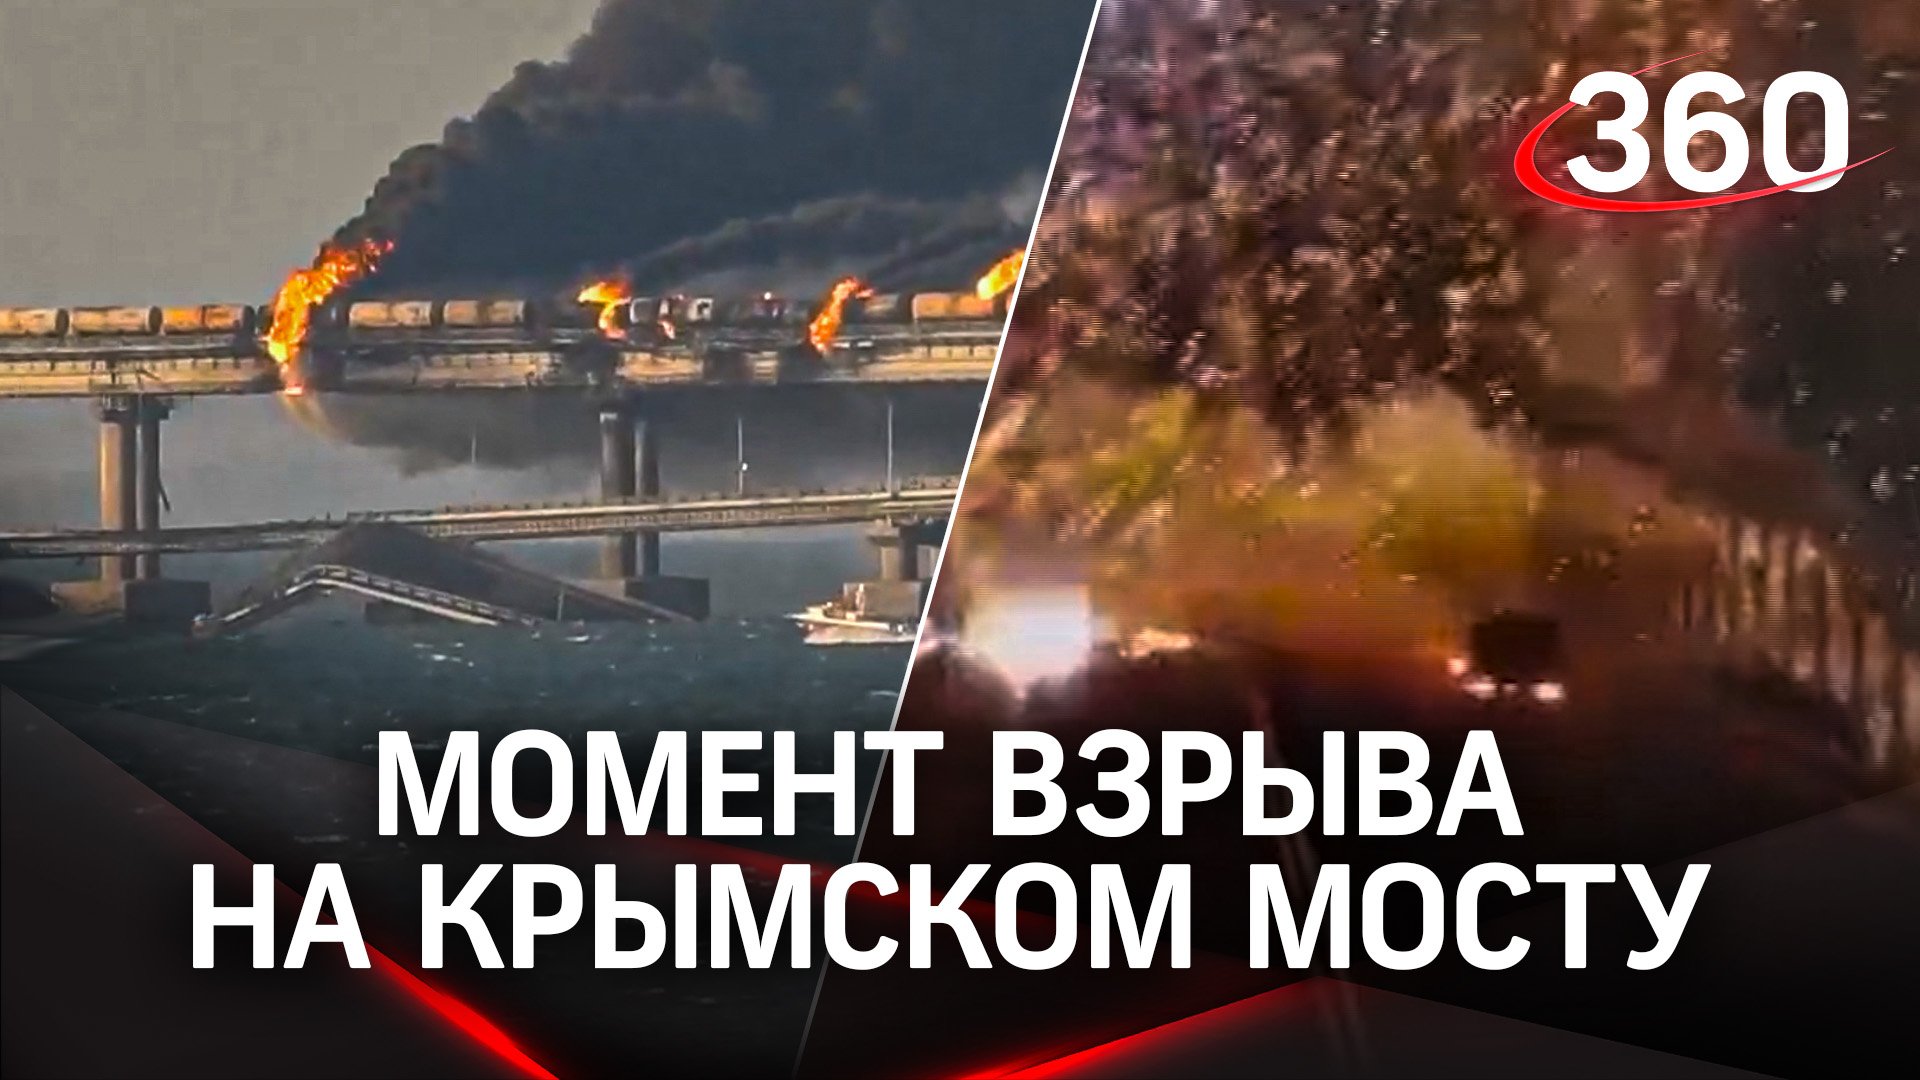 Момент взрыва грузовика на Крымском мосту. Хронология ЧП на кадрах очевидцев